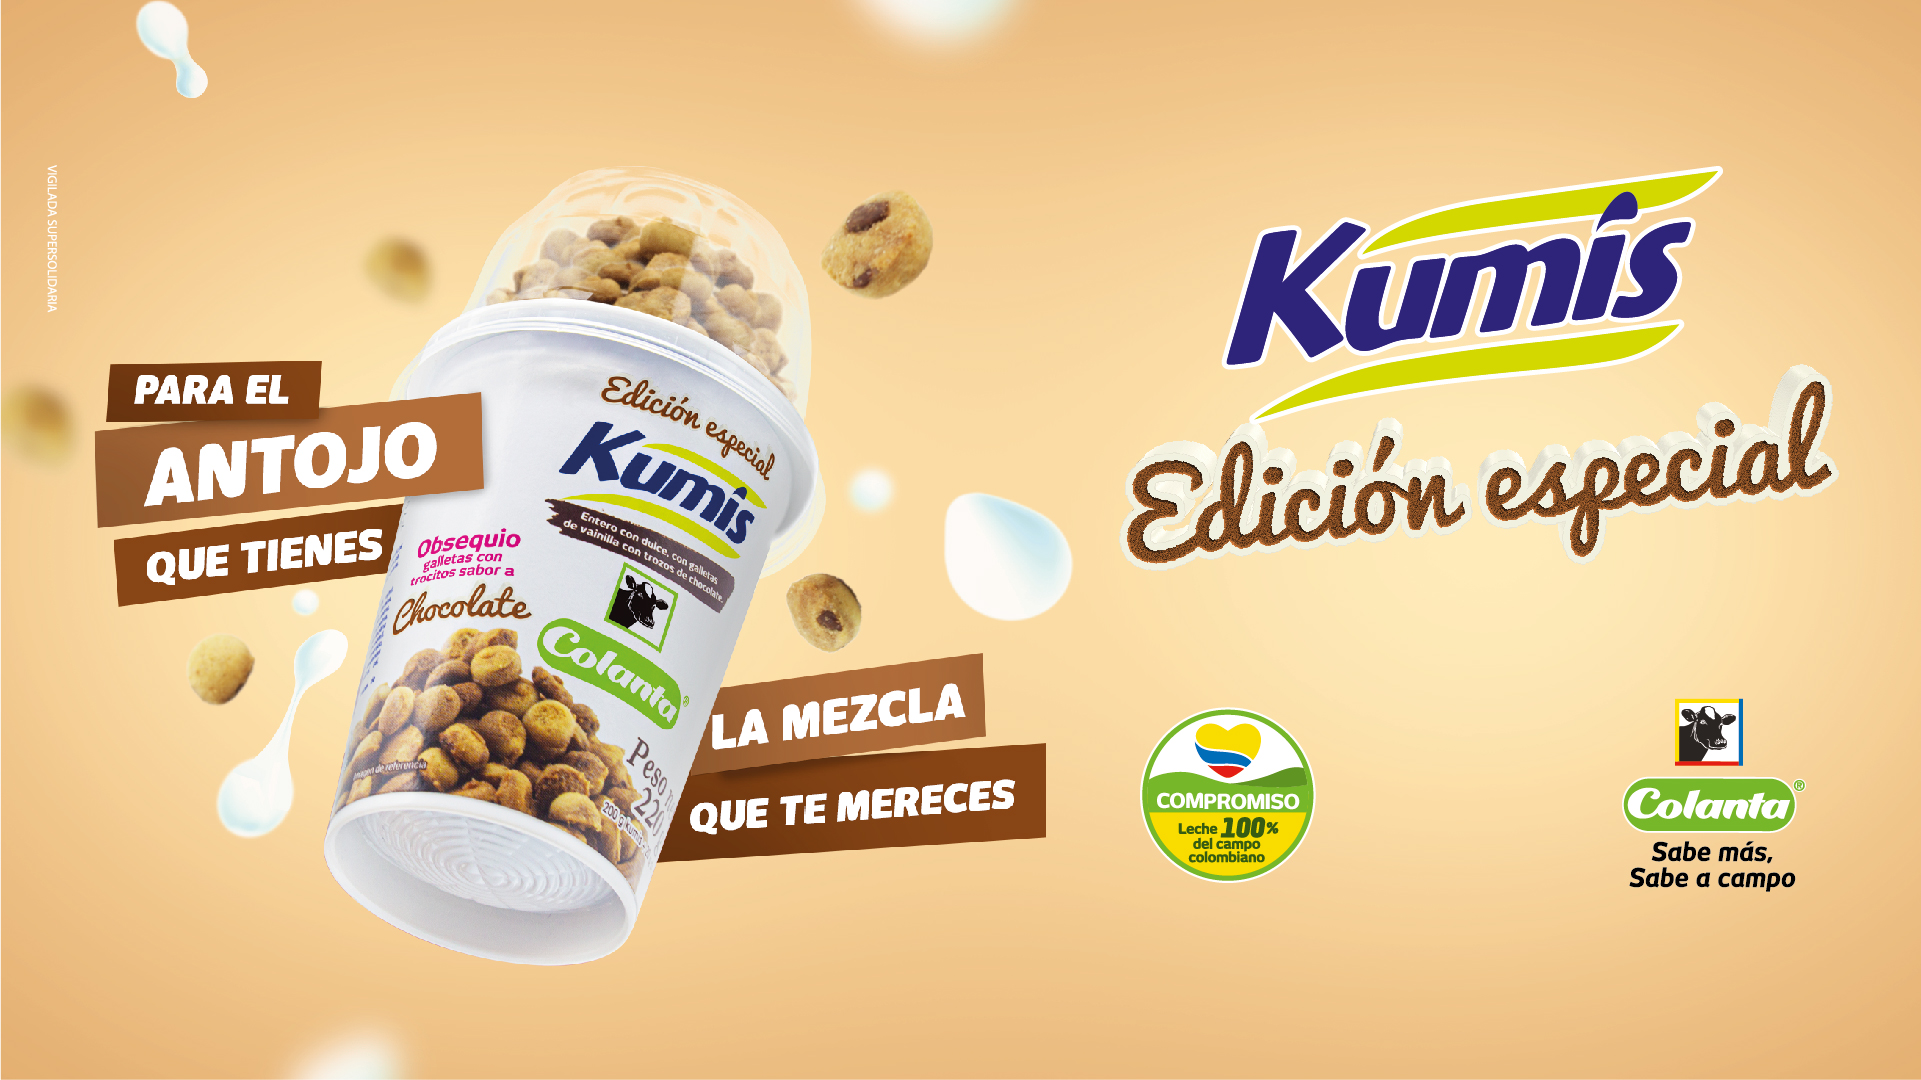 Kumis con galletas de chocolate | Edición especial